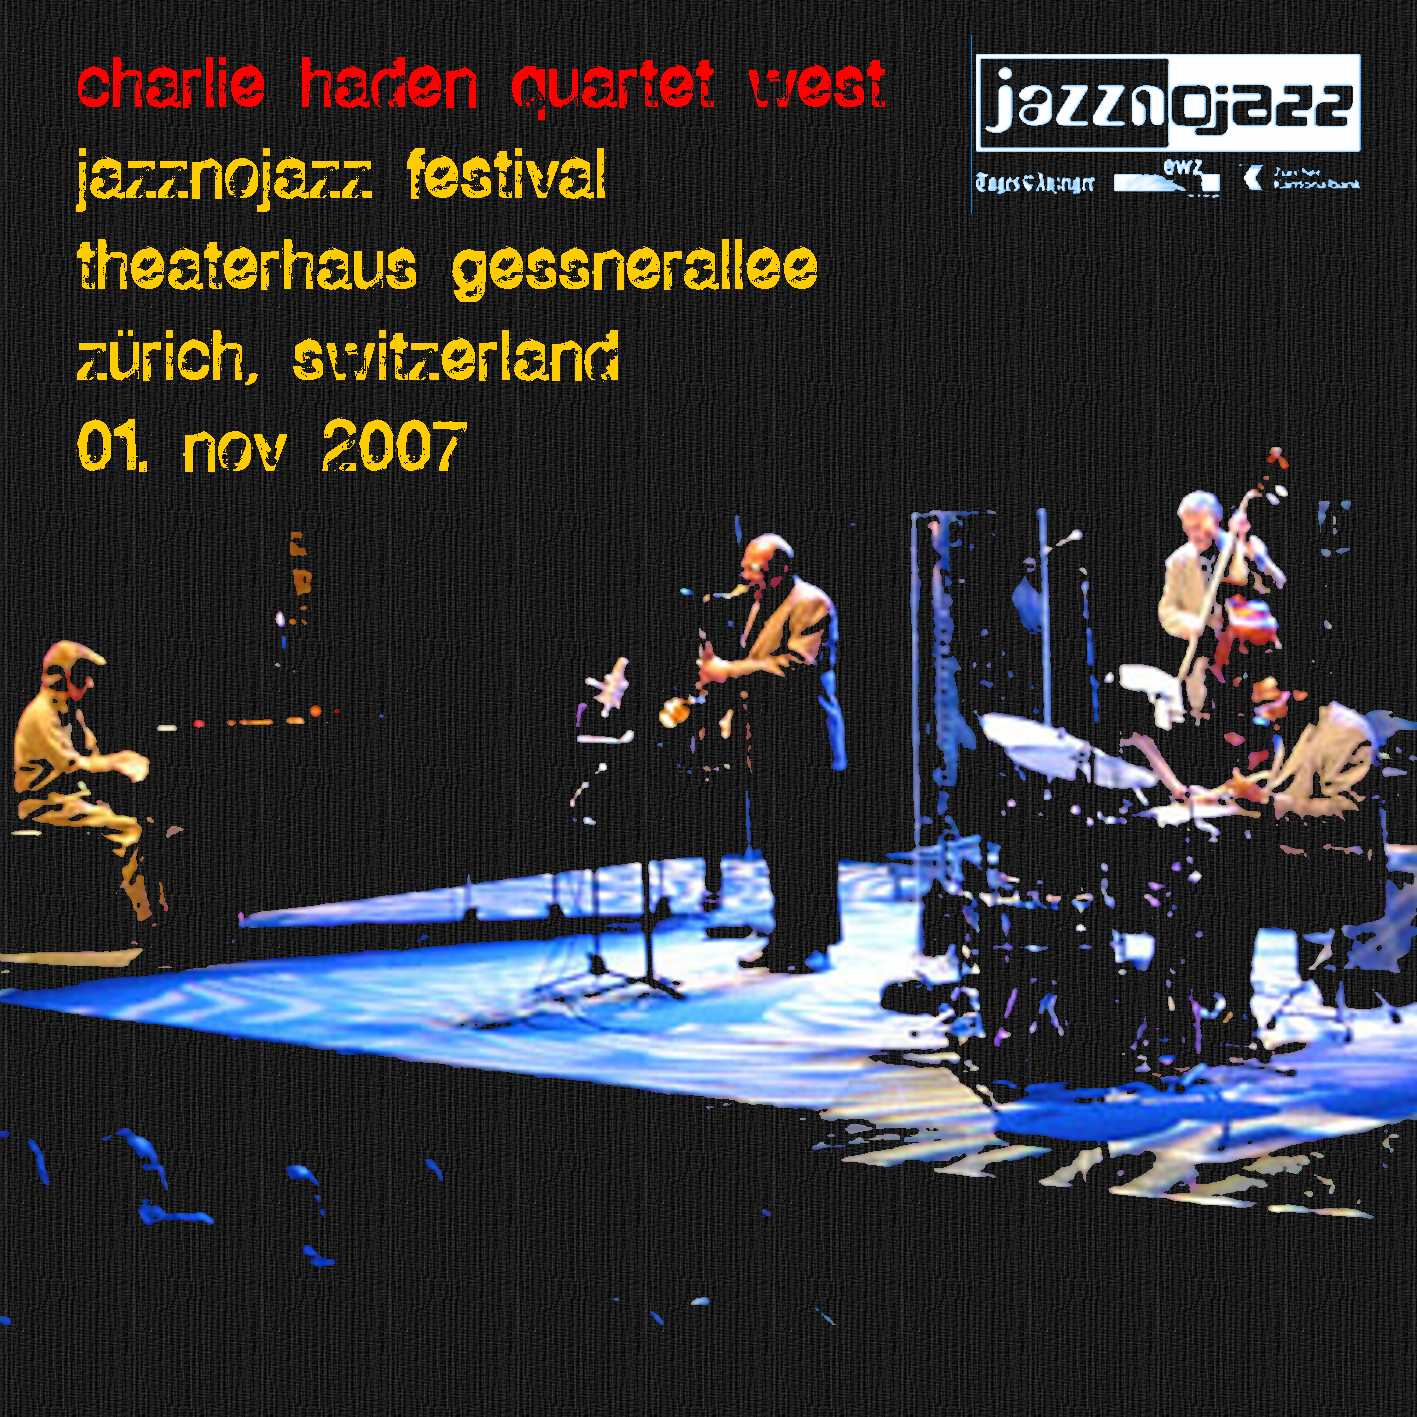 CharlieHadenQuartetWest2007-11-01TheaterhausGessneralleeZurichSwitzerland (2).jpg